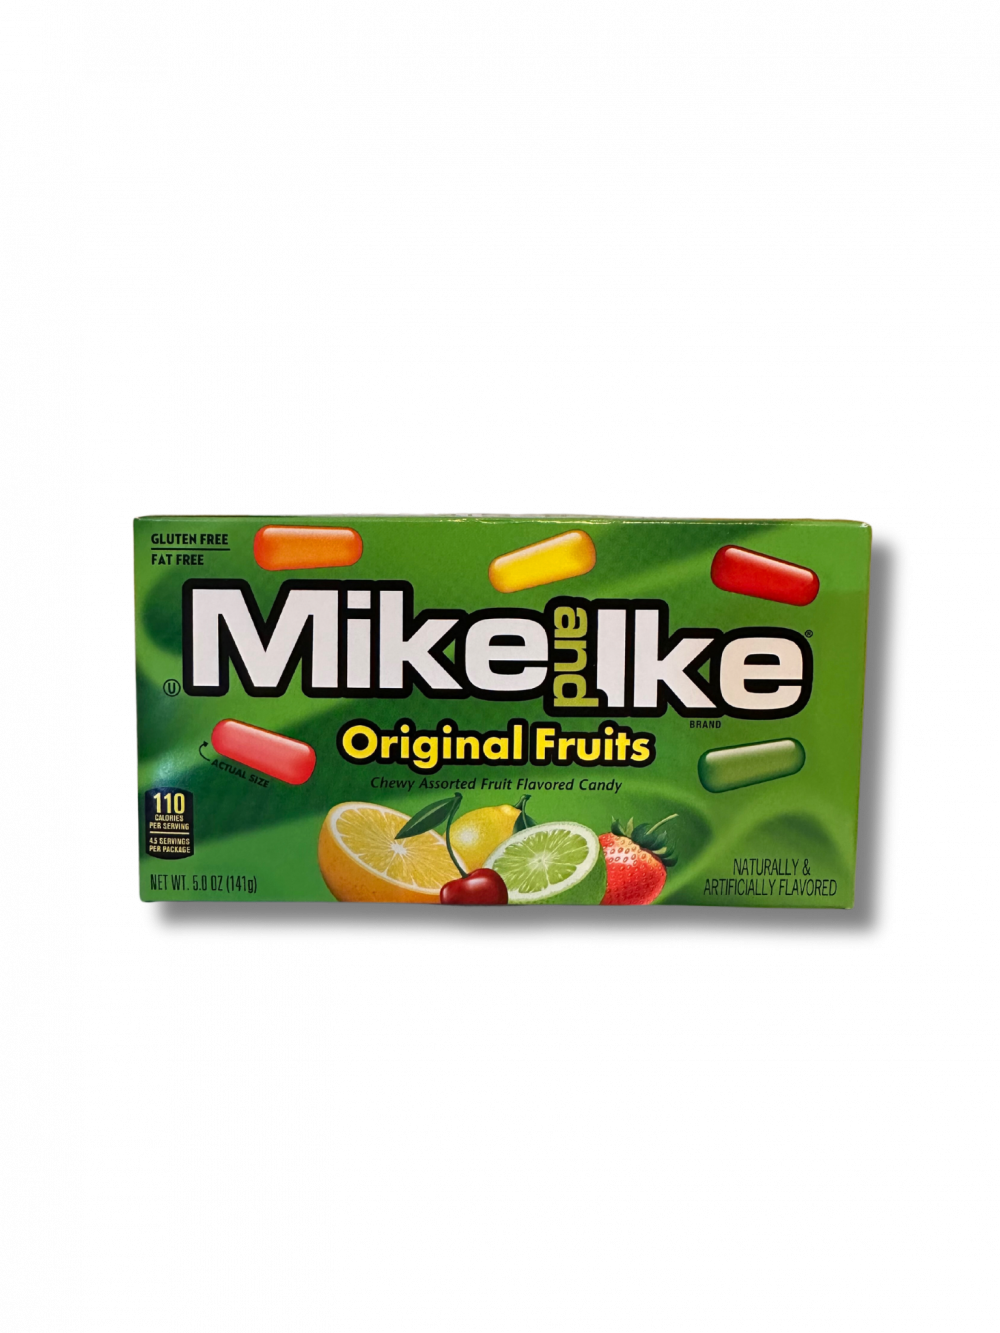 Erlebe den fruchtigen Klassiker mit Mike and Ike Original Fruits aus den USA! Diese bunten Kaubonbons bieten eine unwiderstehliche Mischung aus verschiedenen Geschmacksrichtungen, die deine Sinne verwöhnen. Von saftigen Kirschen bis hin zu exotischer Ananas, jede Packung steckt voller fruchtiger Vielfalt. Mike and Ike Original Fruits sind der perfekte Snack für alle, die nach einem süßen und abwechslungsreichen Genuss suchen. Bestelle noch heute und genieße die zeitlosen Aromen dieser beliebten amerikanischen Leckerei! […] - Breddas Hemp & Sweets Company Wuppertal